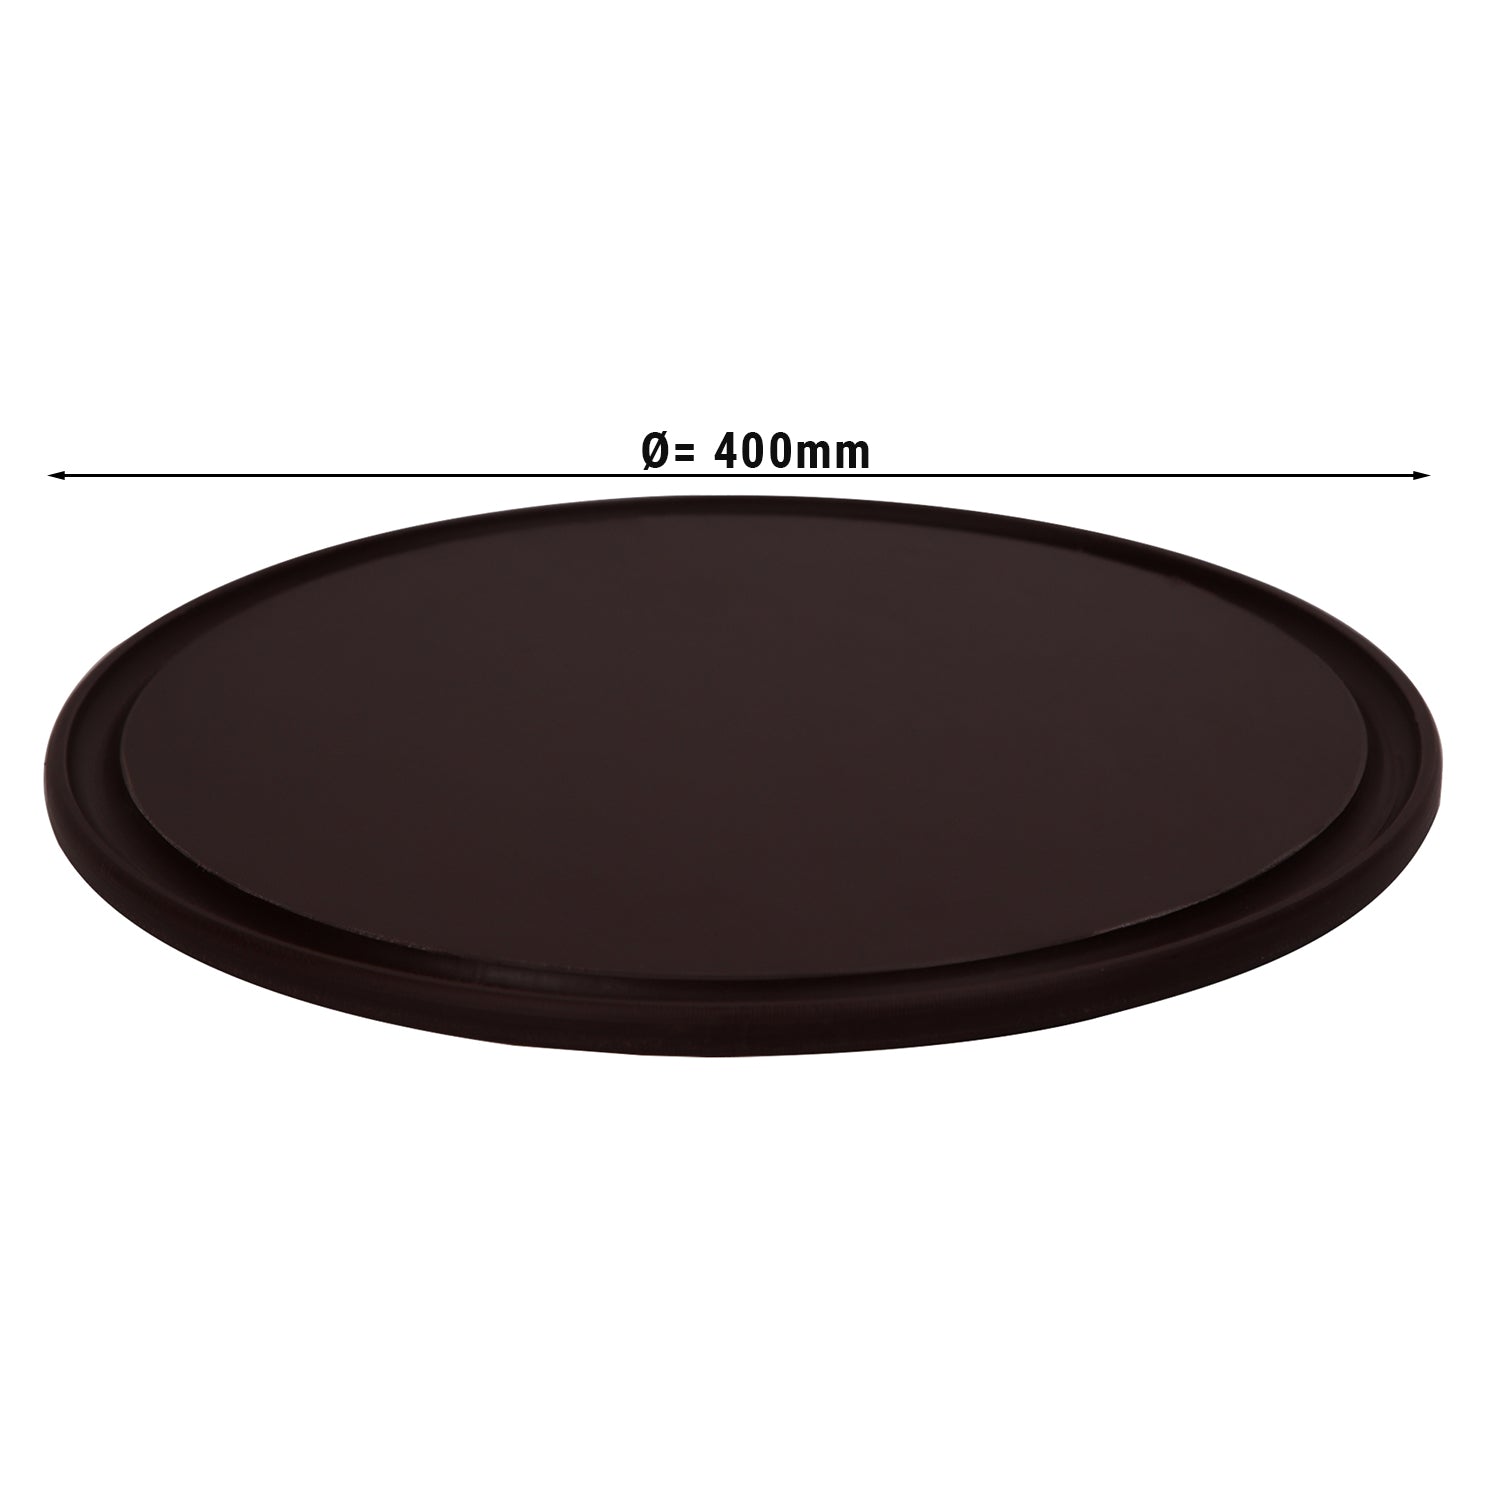 Pizzabakke - 40 cm i diameter